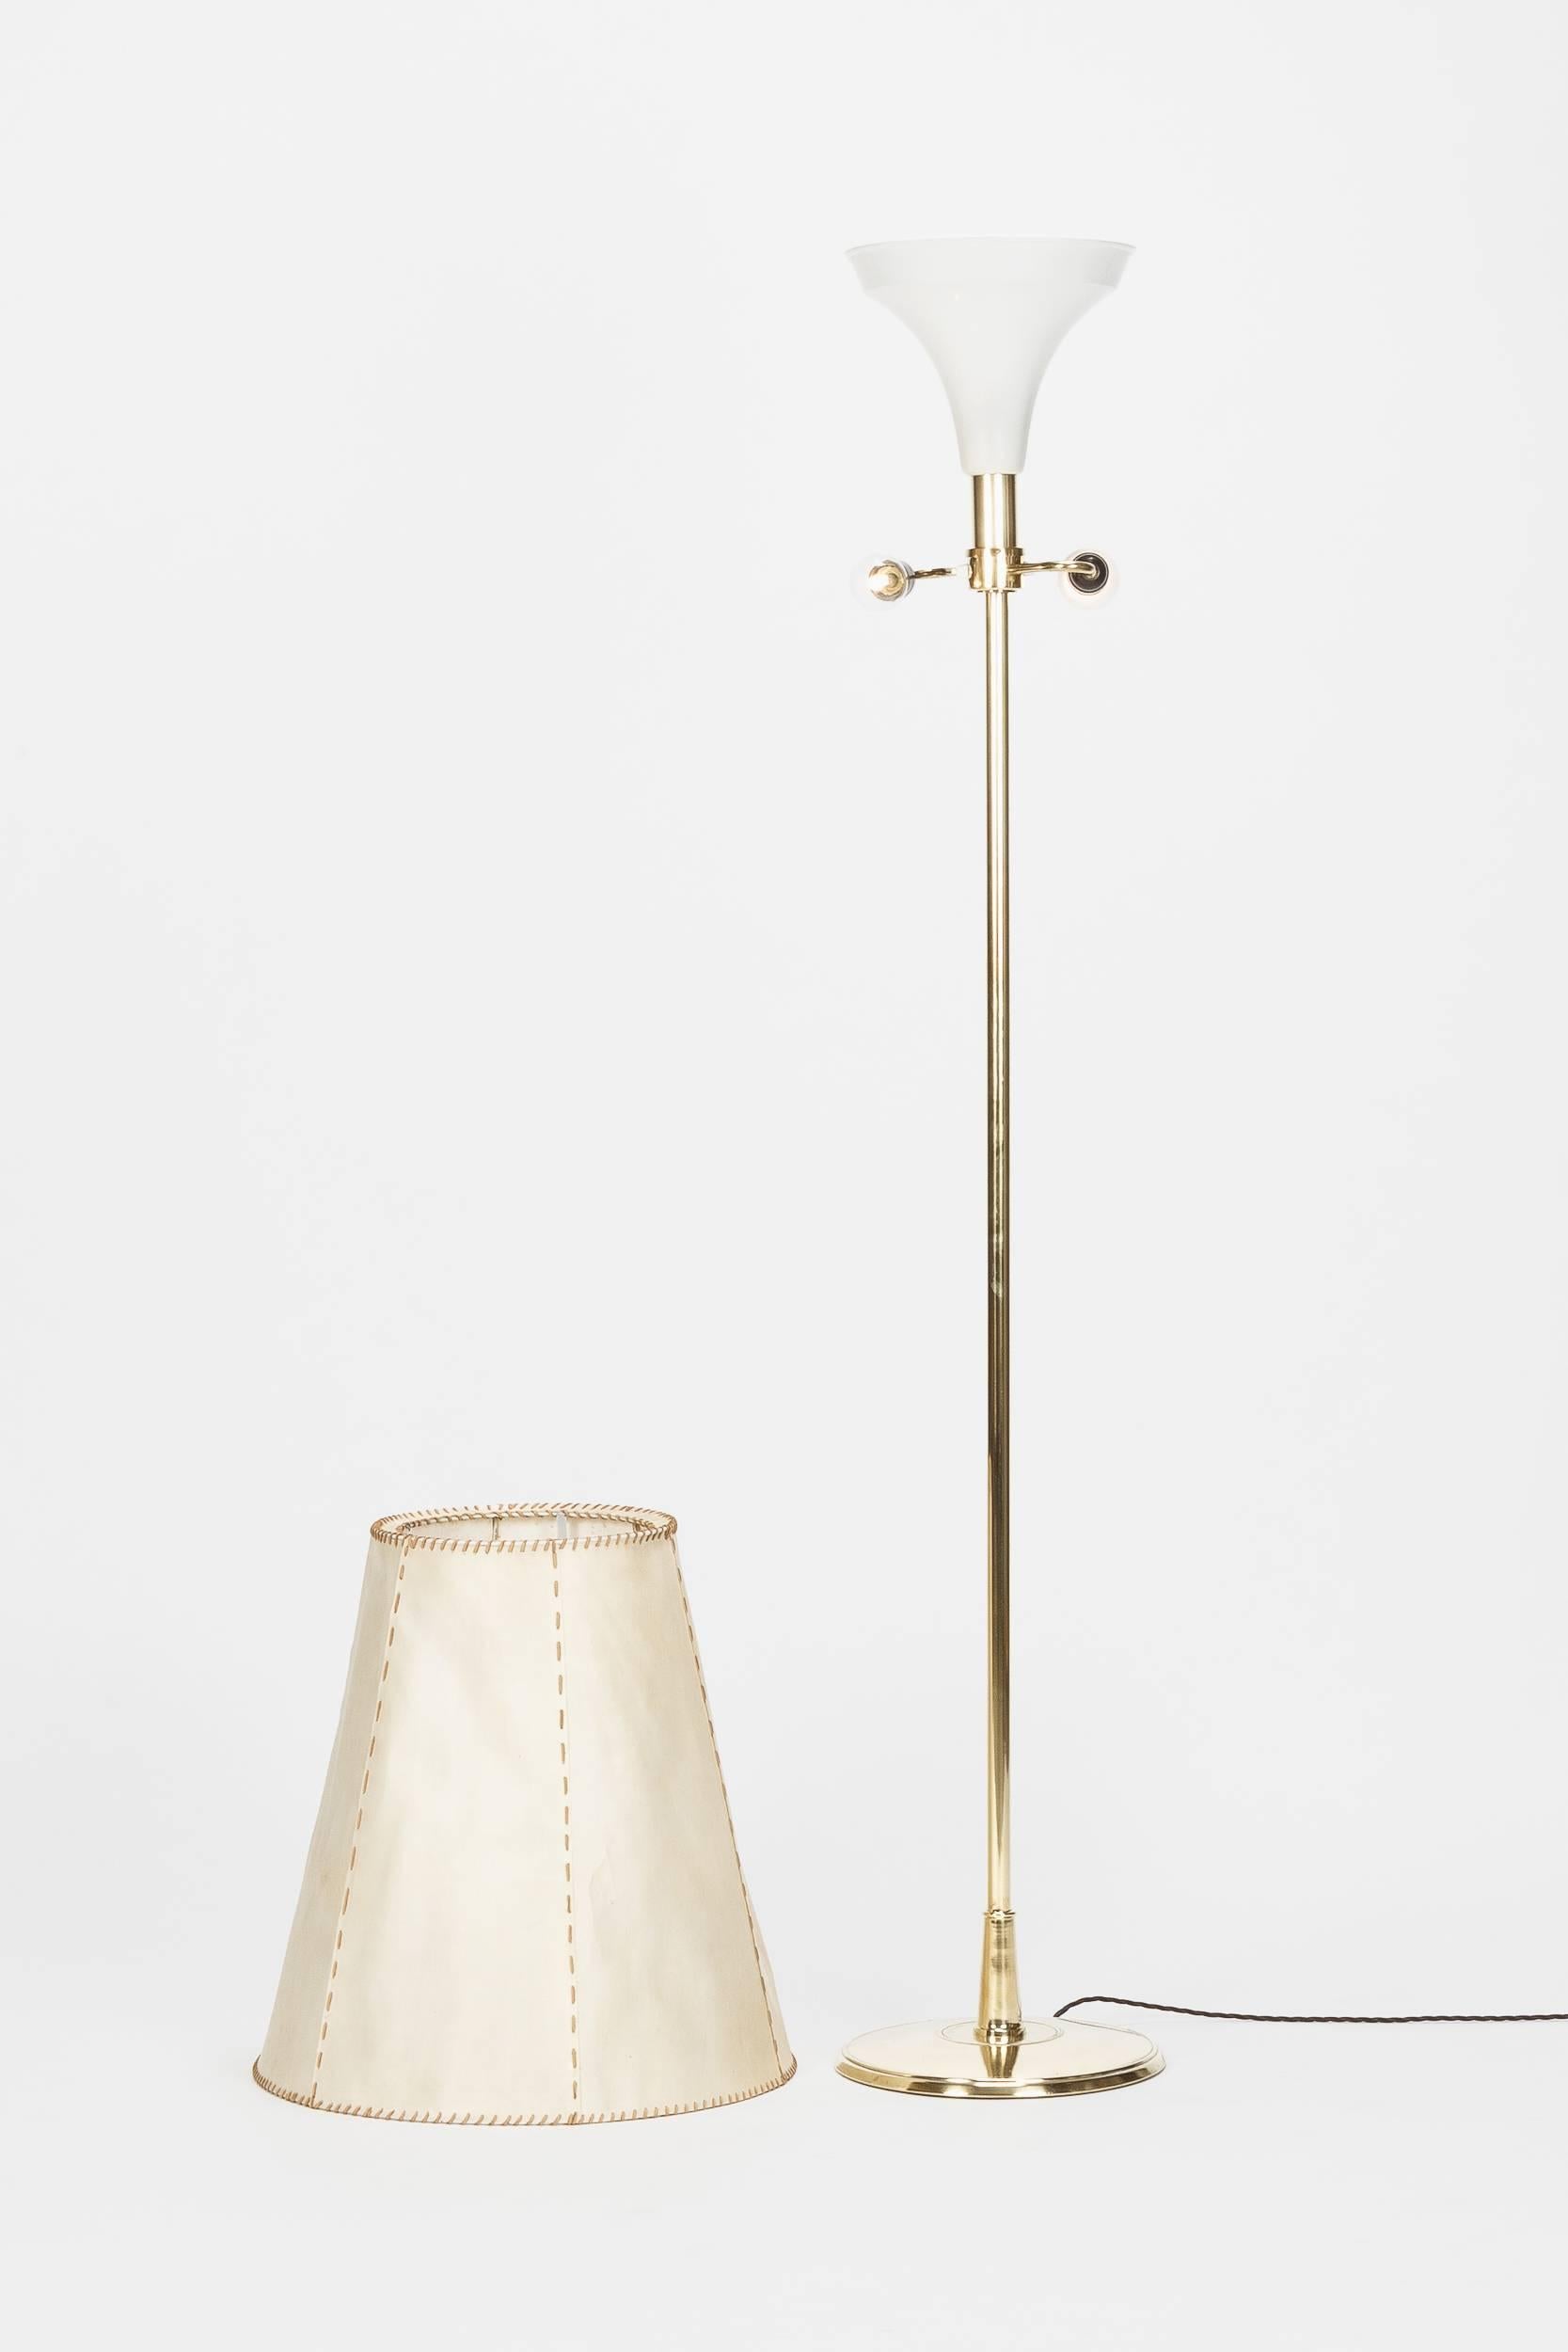 Swiss Floor Lampe Eberth Zürich Model 454 Hide Brass, 1940s In Good Condition In Basel, CH